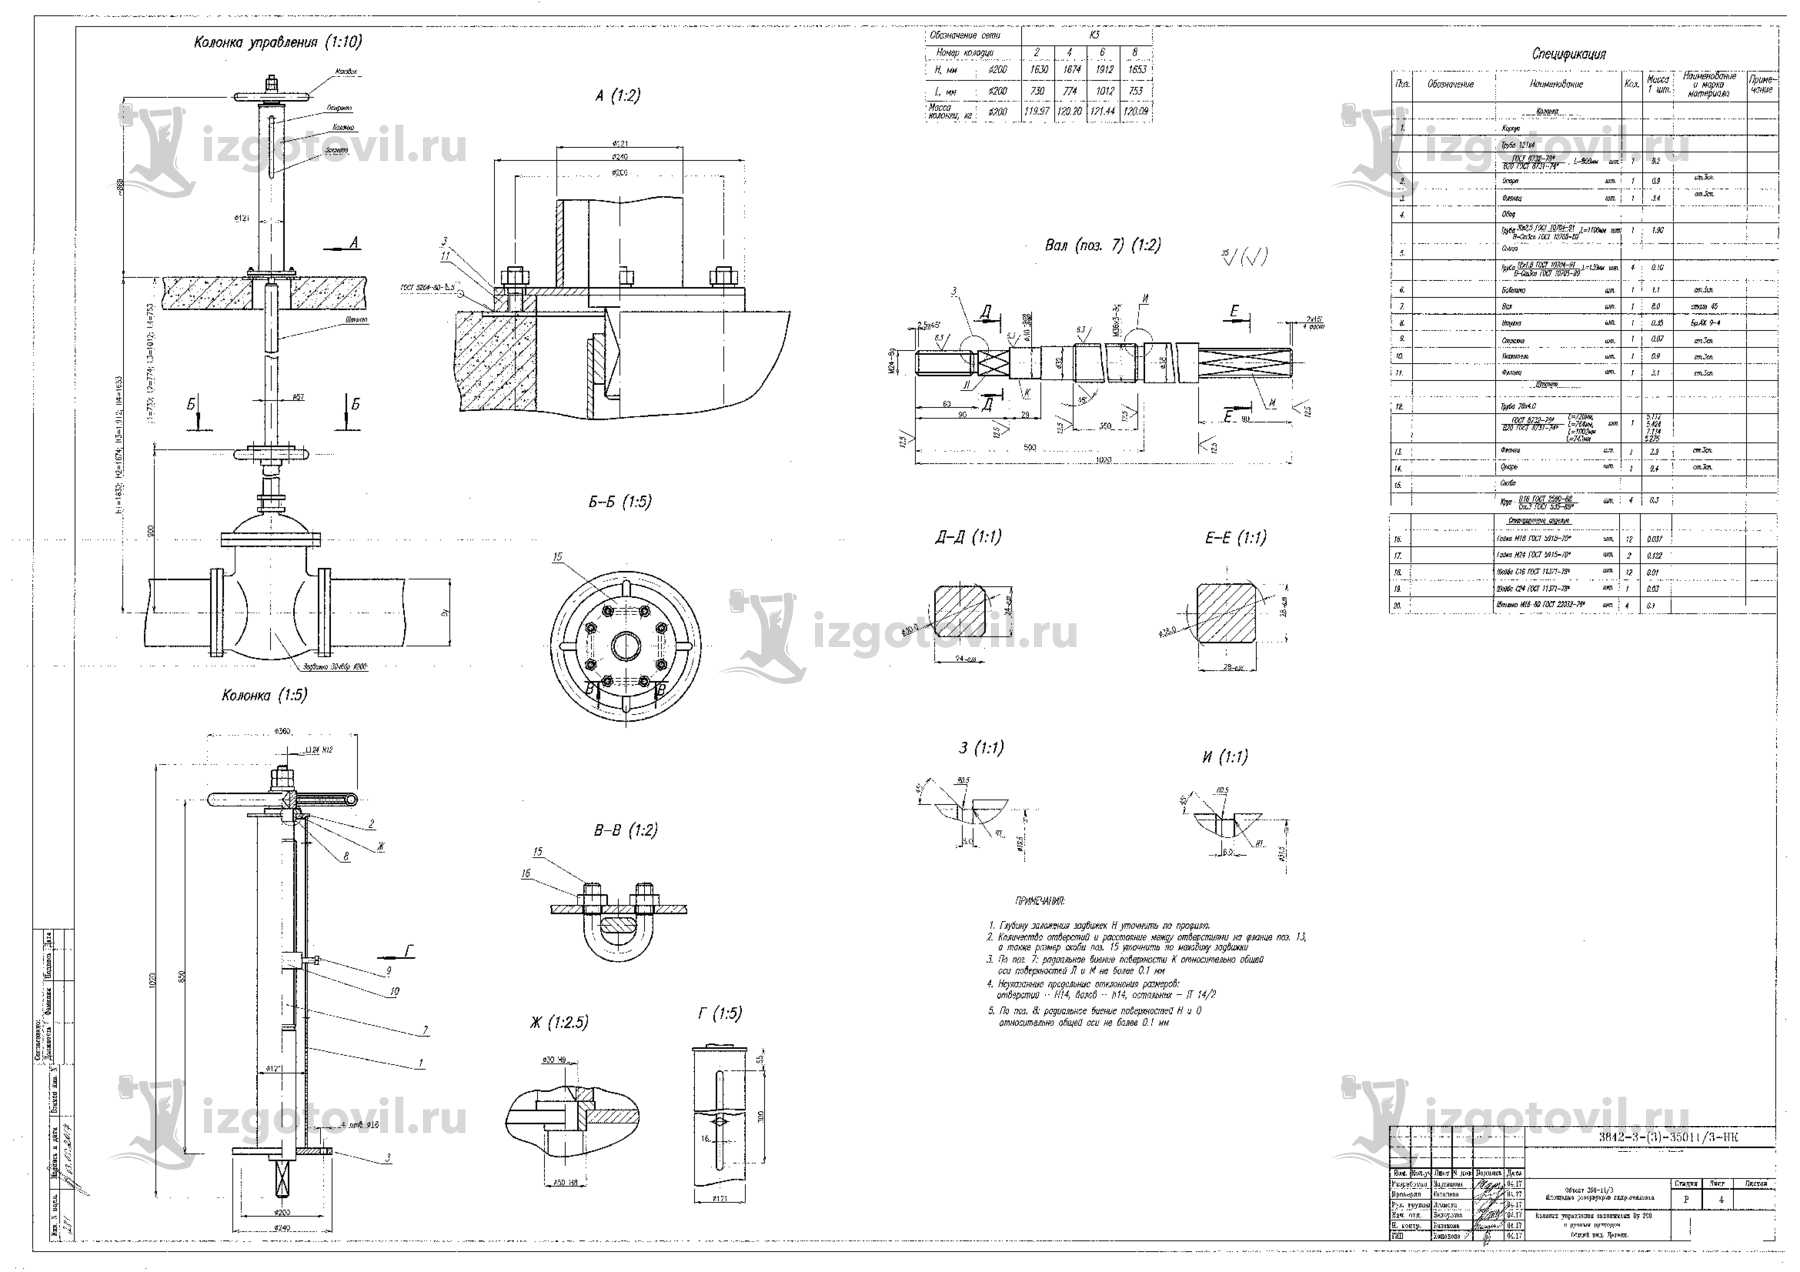 Изготовление деталей оборудования (комплекс комбинированной установки по переработке прямогонных бензиновых фракций УК-1).